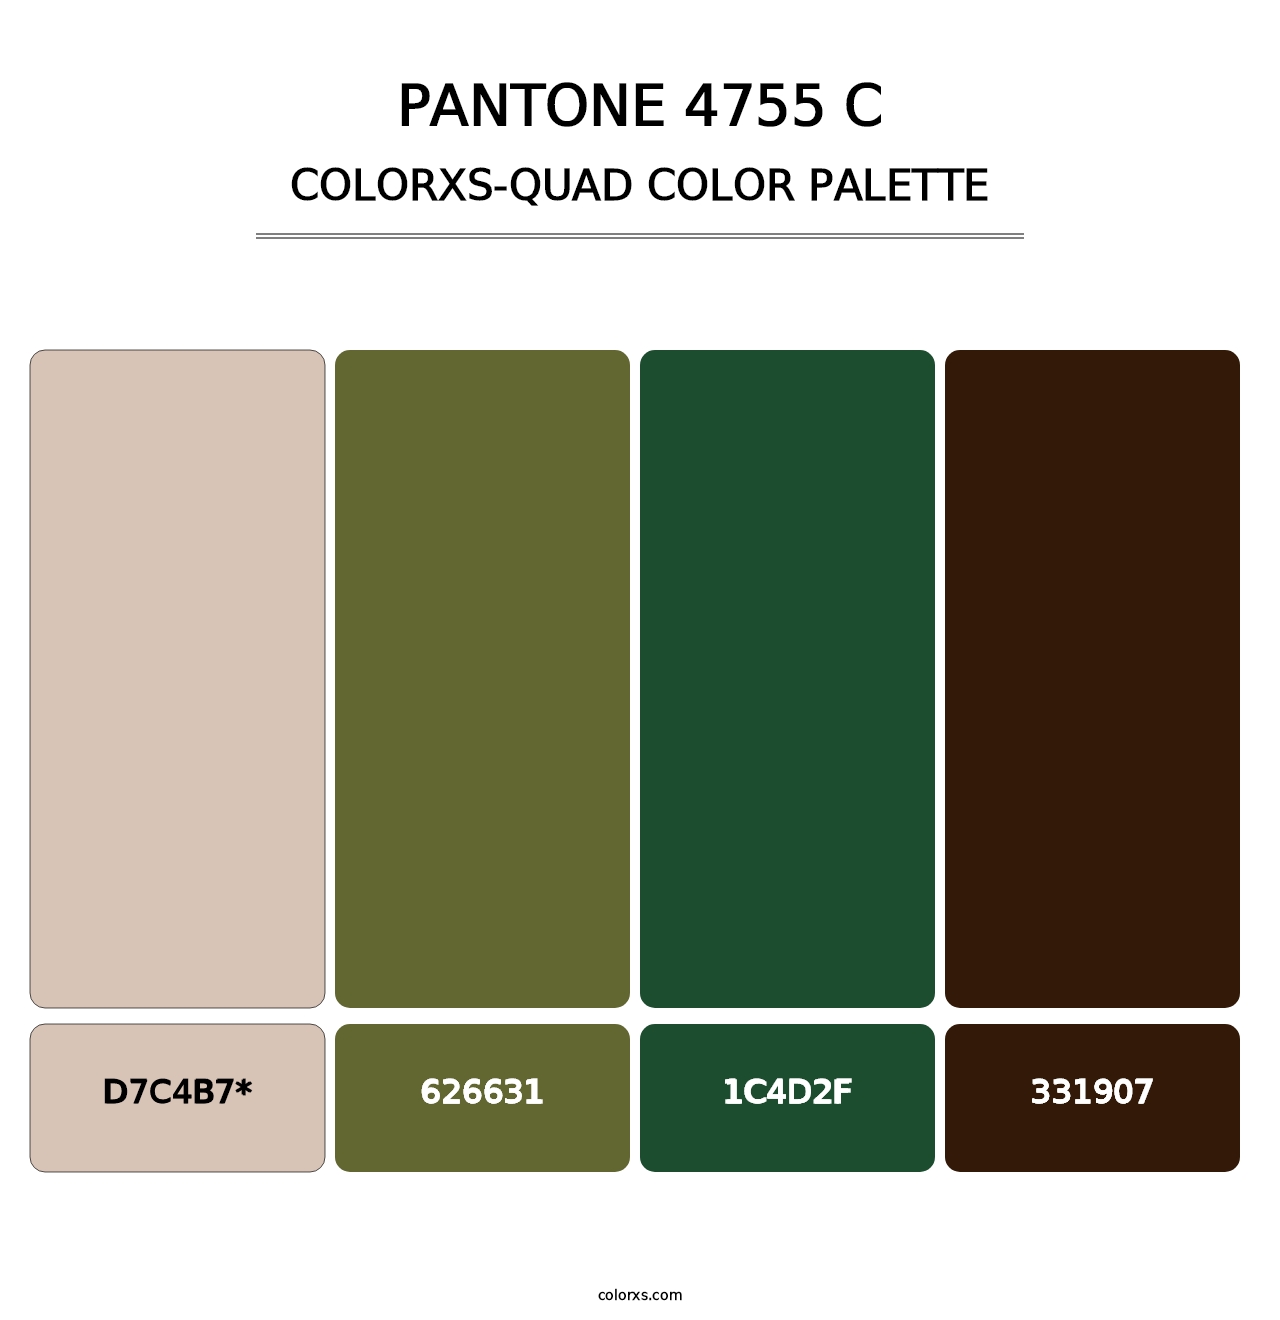 PANTONE 4755 C - Colorxs Quad Palette